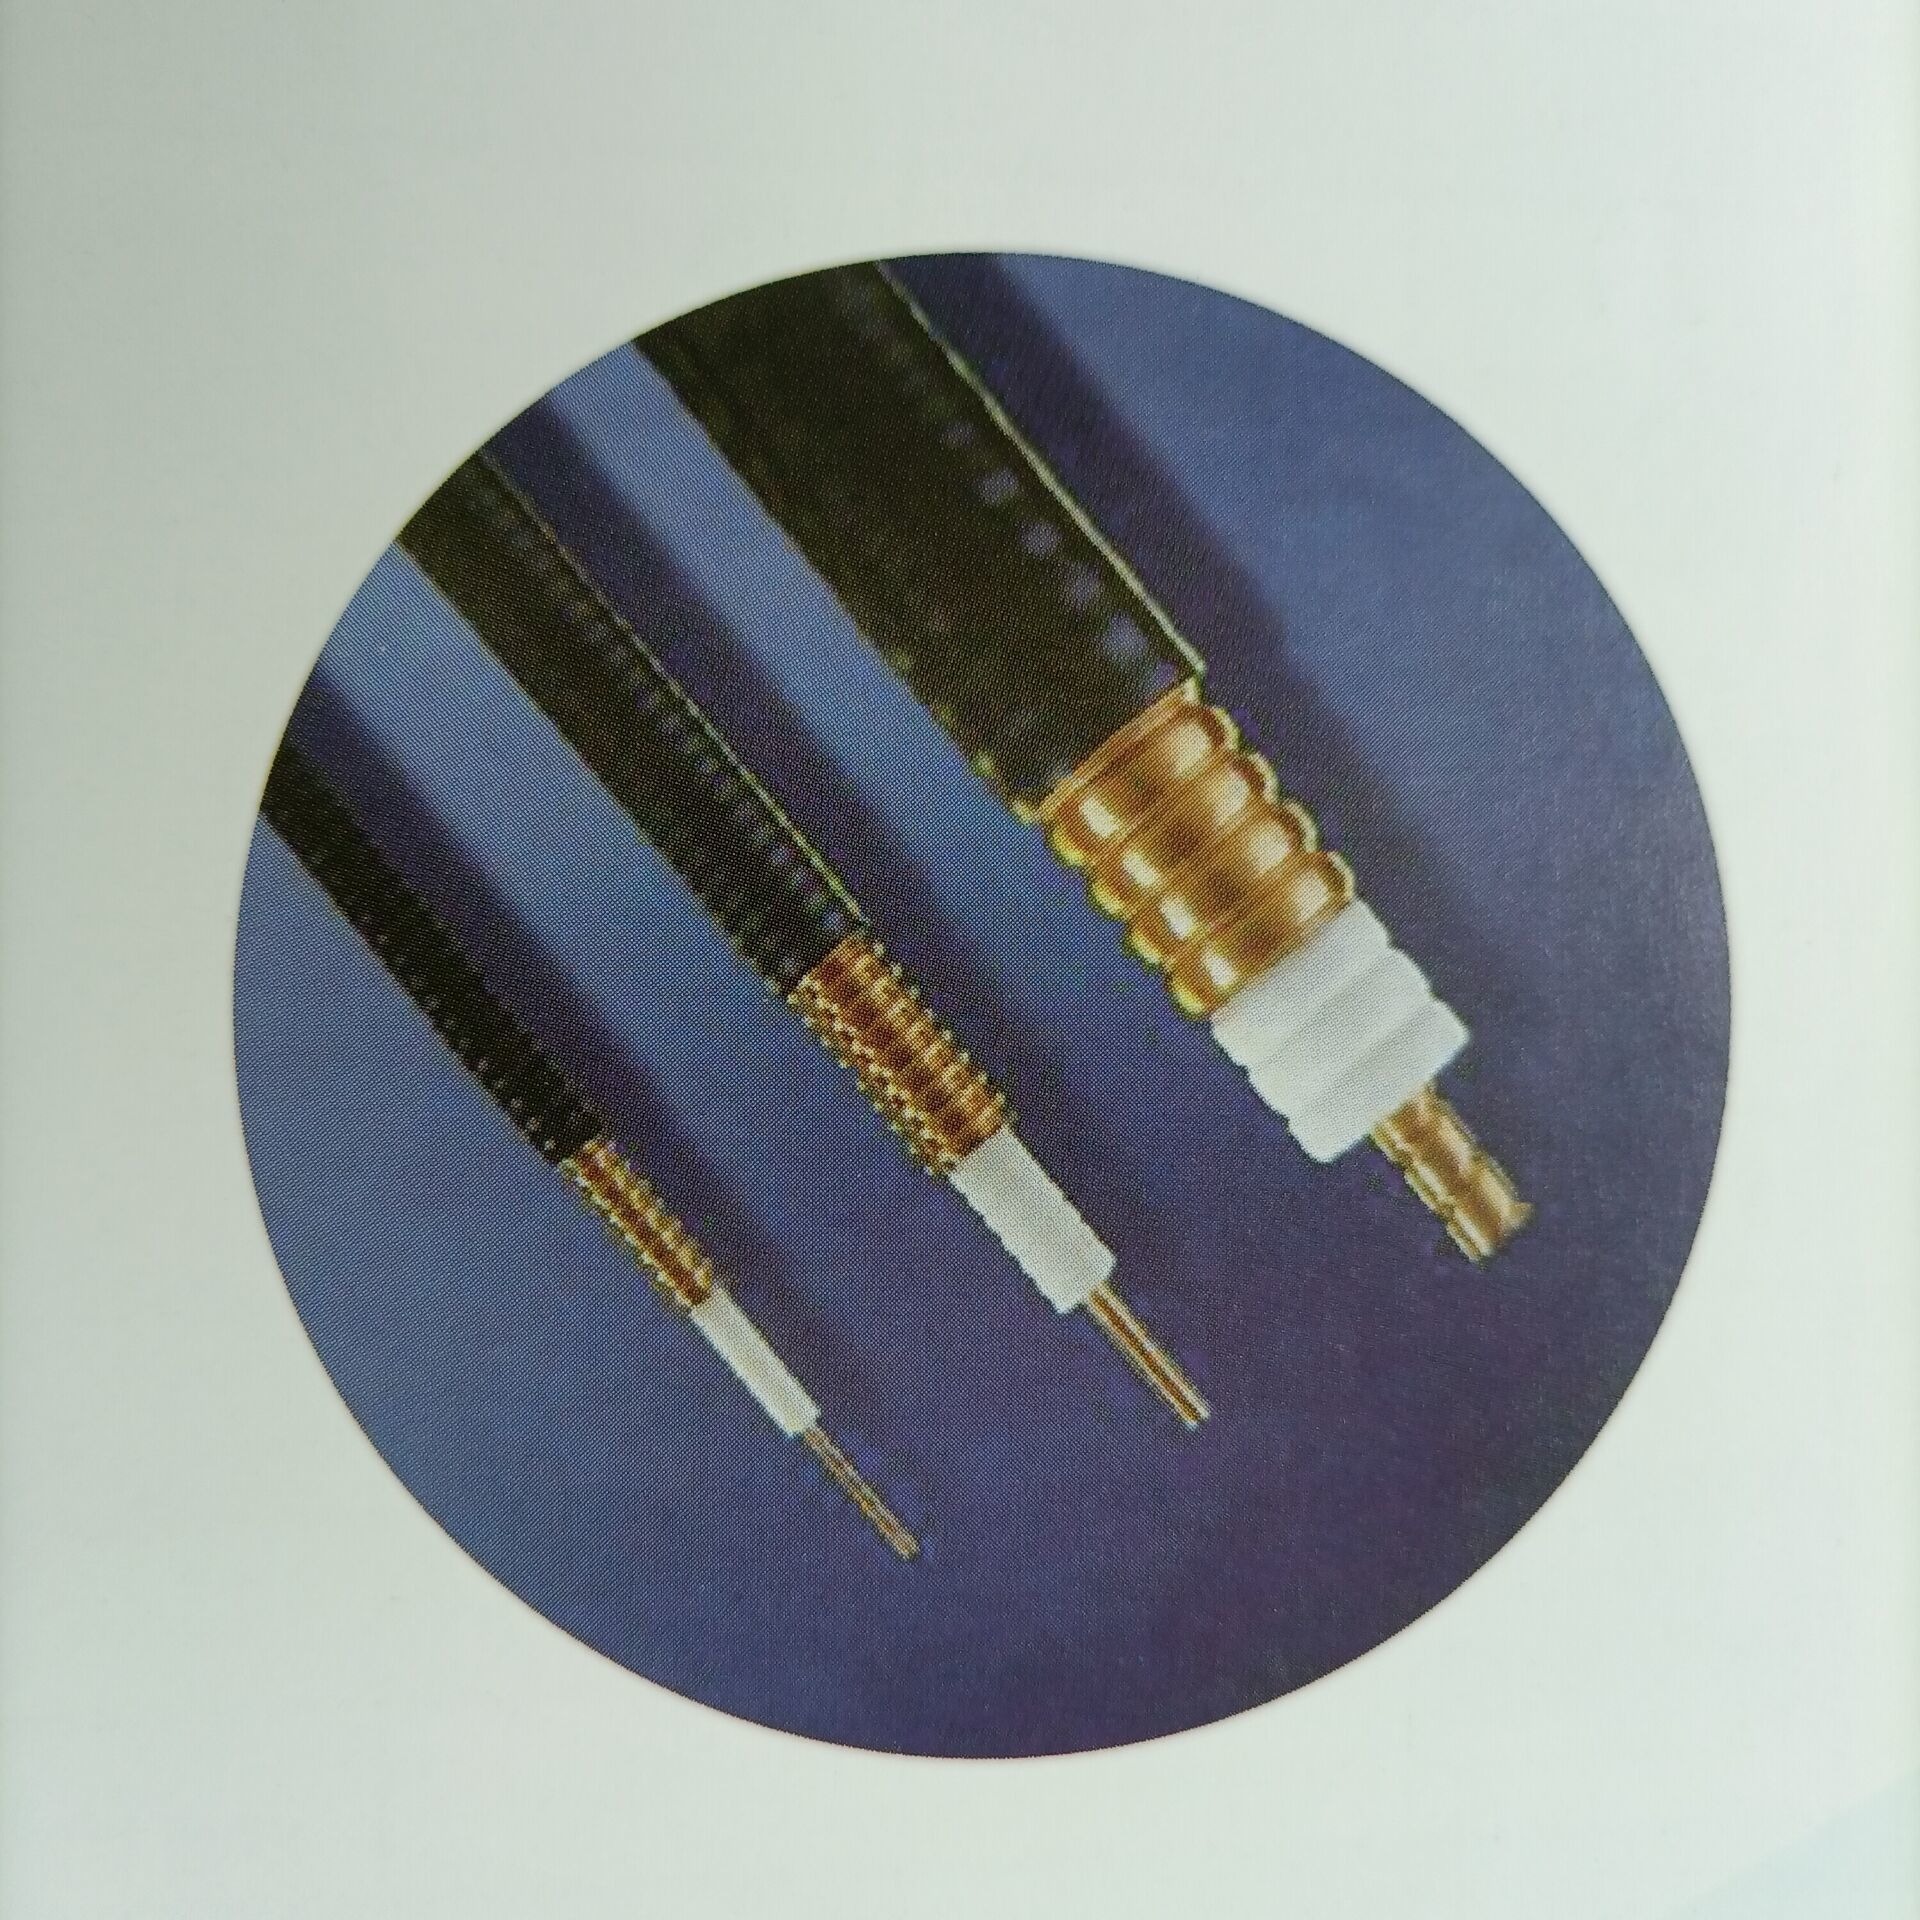 电缆 矿用泄漏通信馈线 通信电缆  传输电缆  HCAAYZ-50-12 (1/2) 通信馈管  无线电通讯传输馈管